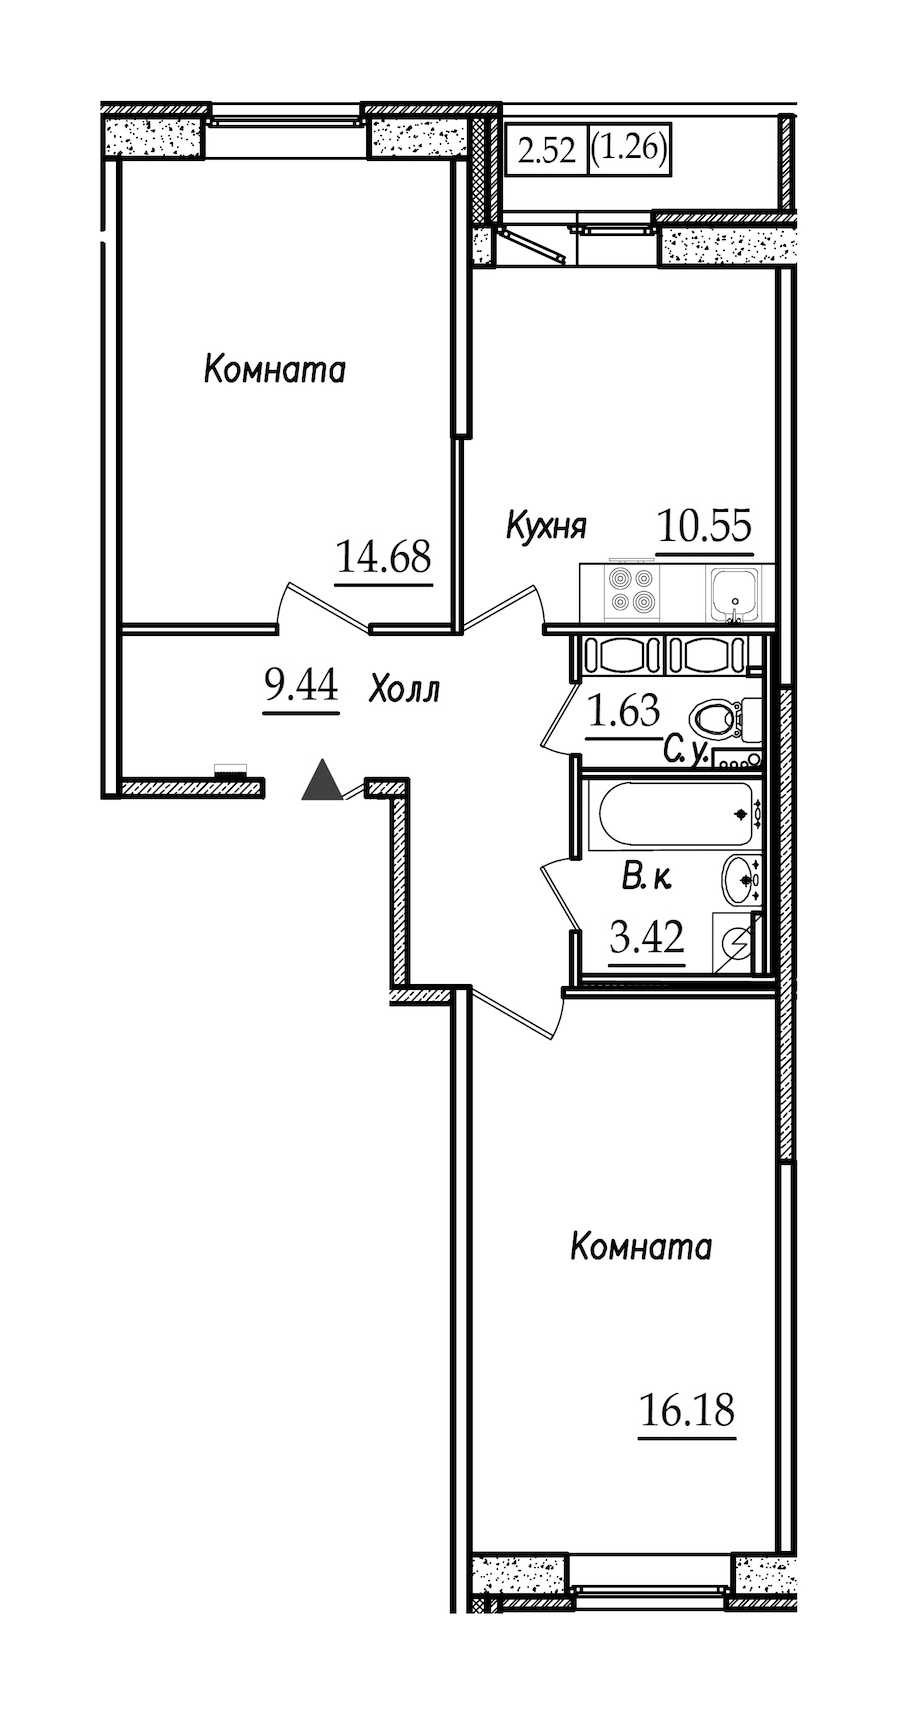 Двухкомнатная квартира в СПб Реновация: площадь 57.16 м2 , этаж: 2 – купить в Санкт-Петербурге